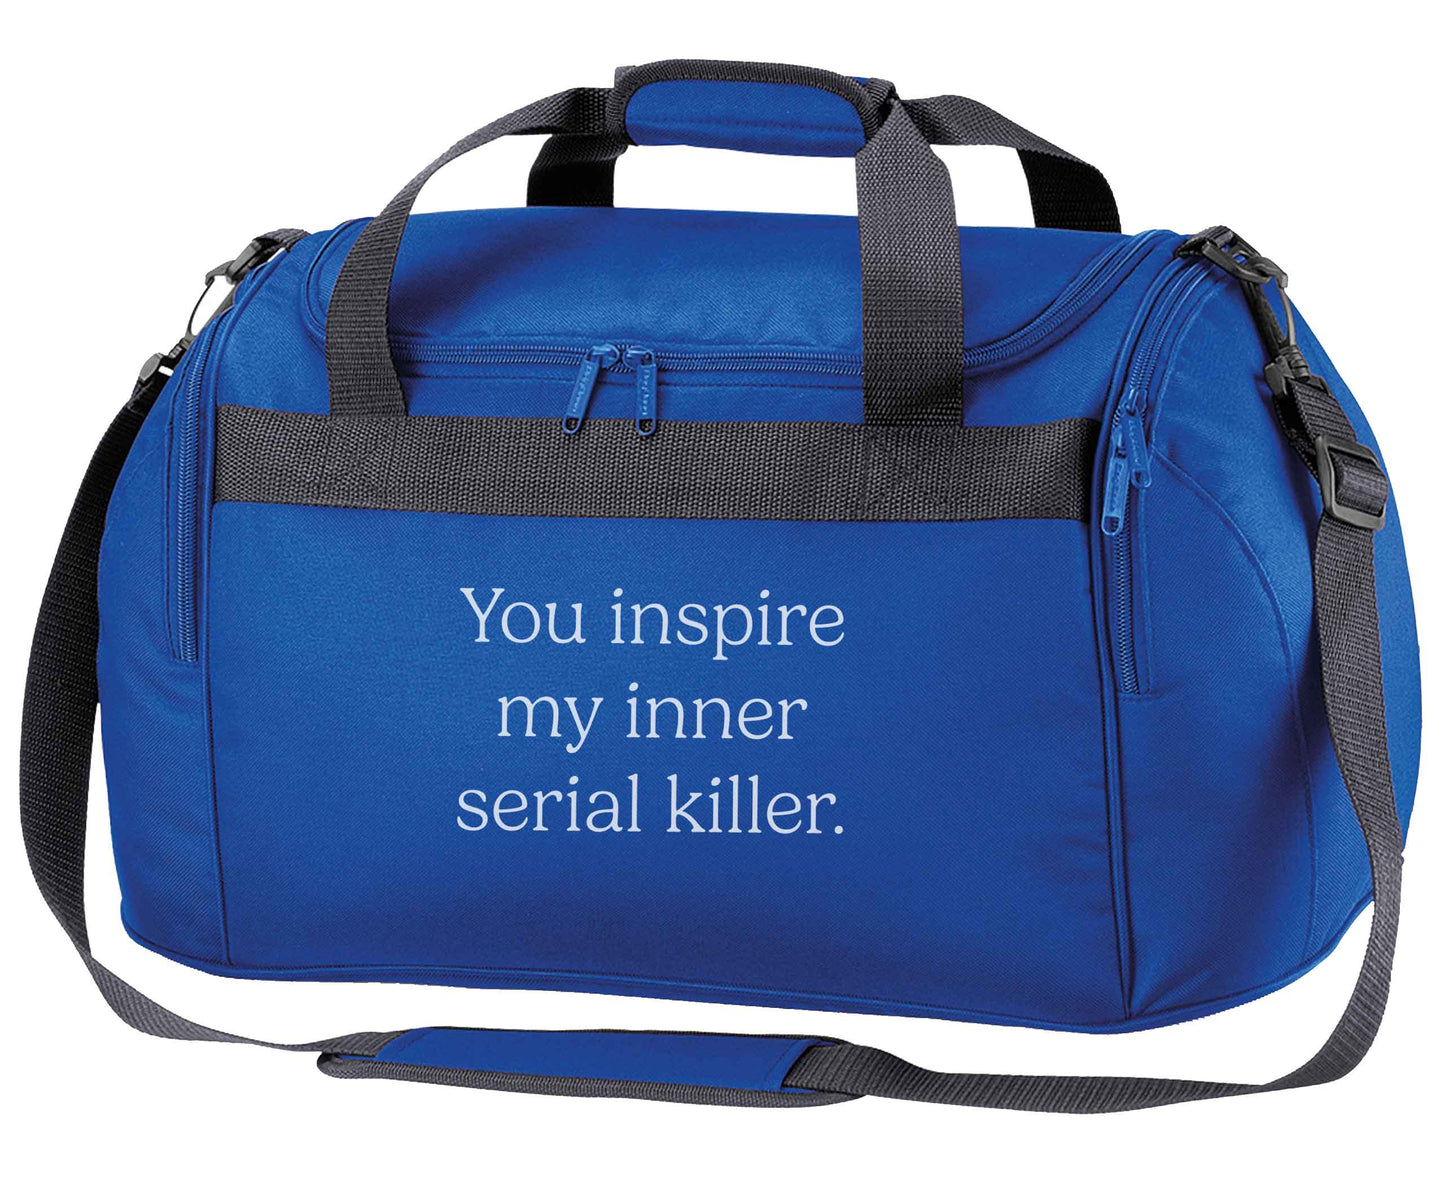 You inspire my inner serial killer Kit royal blue holdall / duffel bag